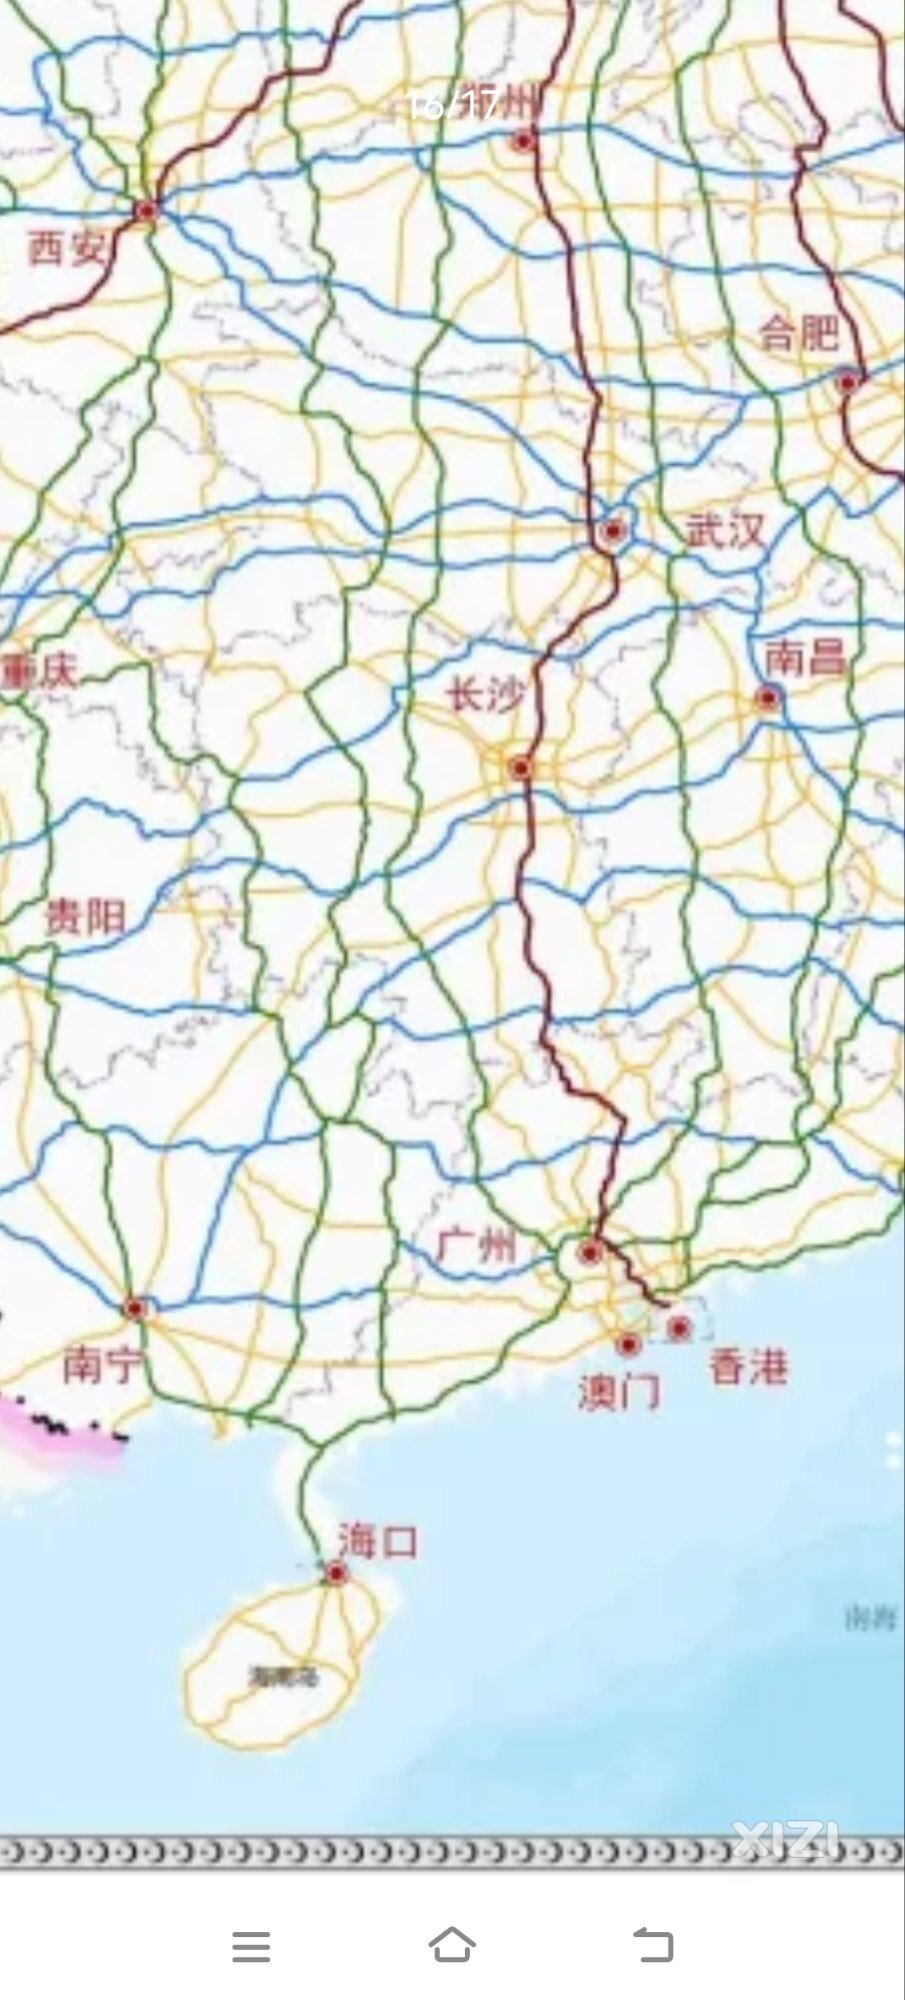 国家高速公路网规划发布:惠州未来20年主要还是这5条国家高速